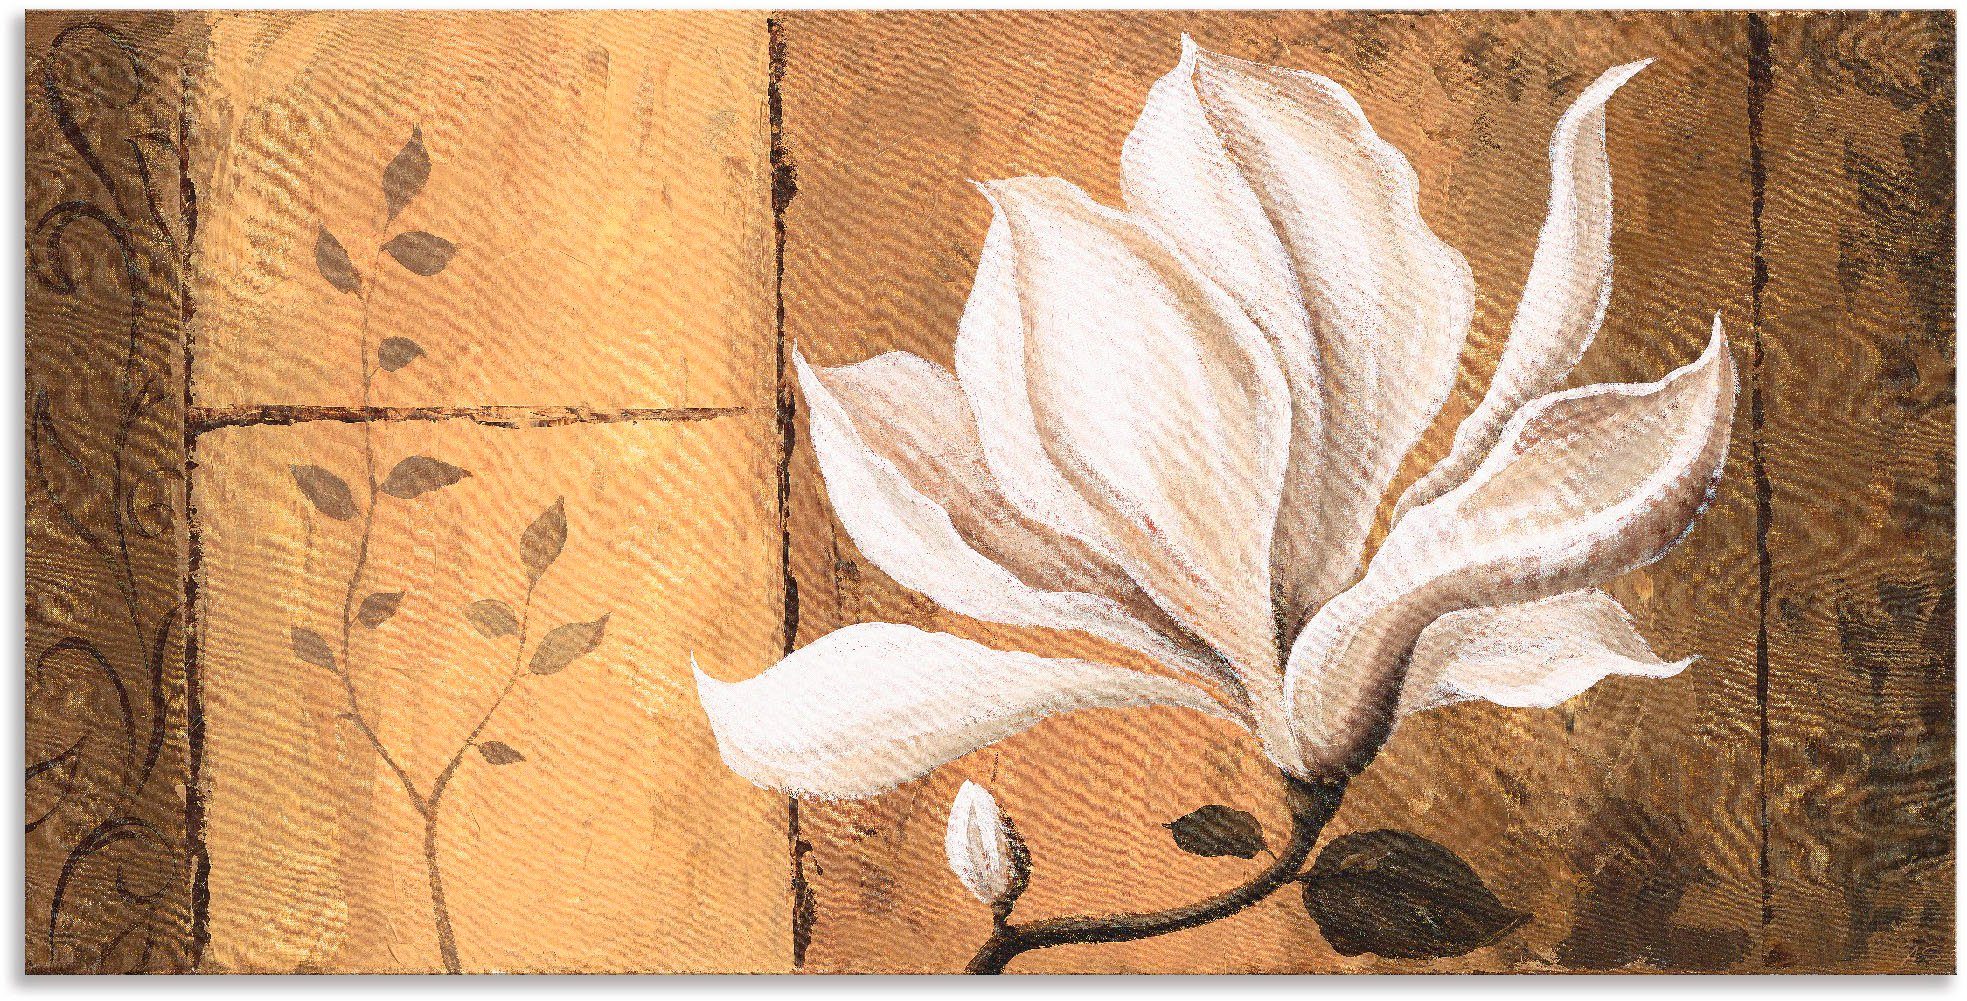 Artland Artprint Magnolia aan goud/bruin in vele afmetingen & productsoorten - artprint van aluminium / artprint voor buiten, artprint op linnen, poster, muursticker / wandfolie oo